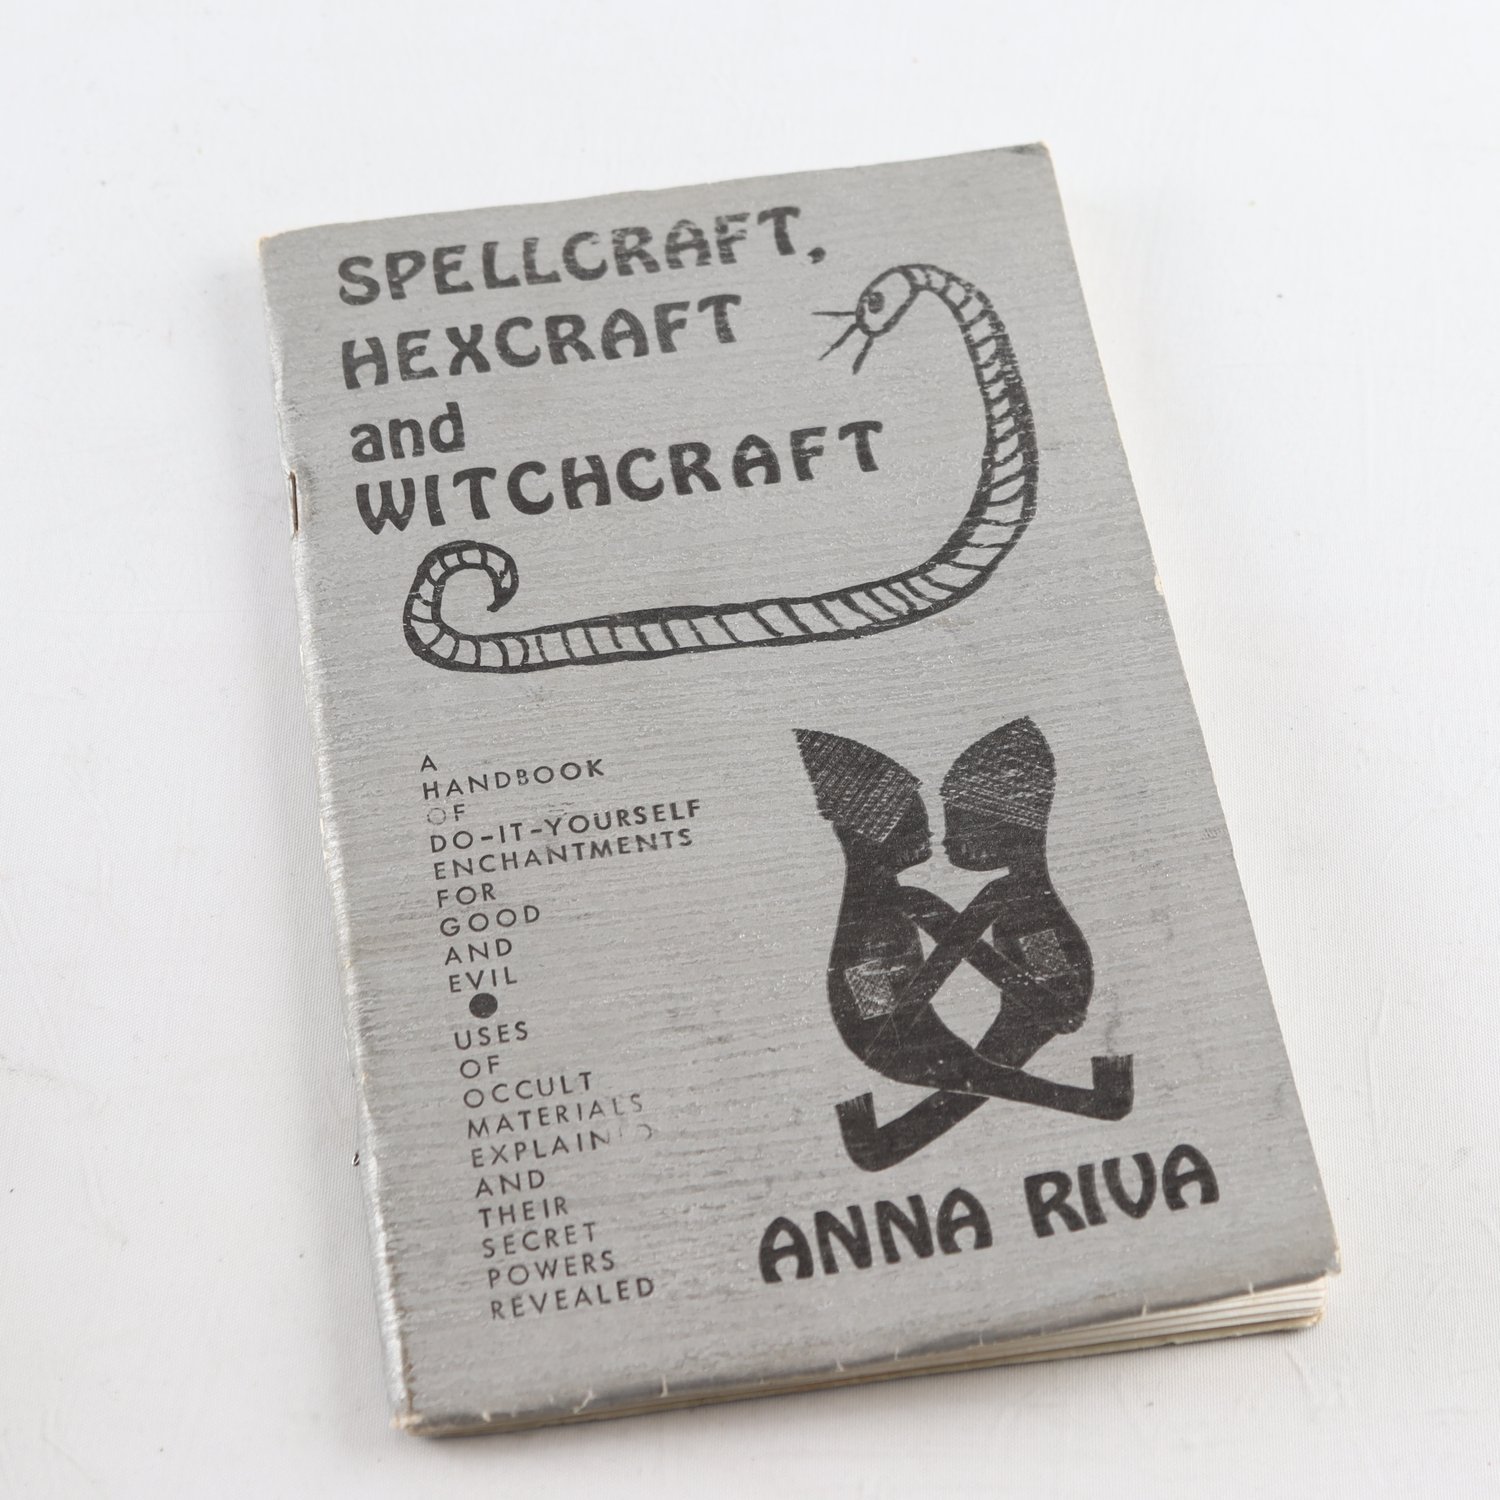 Spellcraft, Hexcraft and Witchcraft, Anna Riva